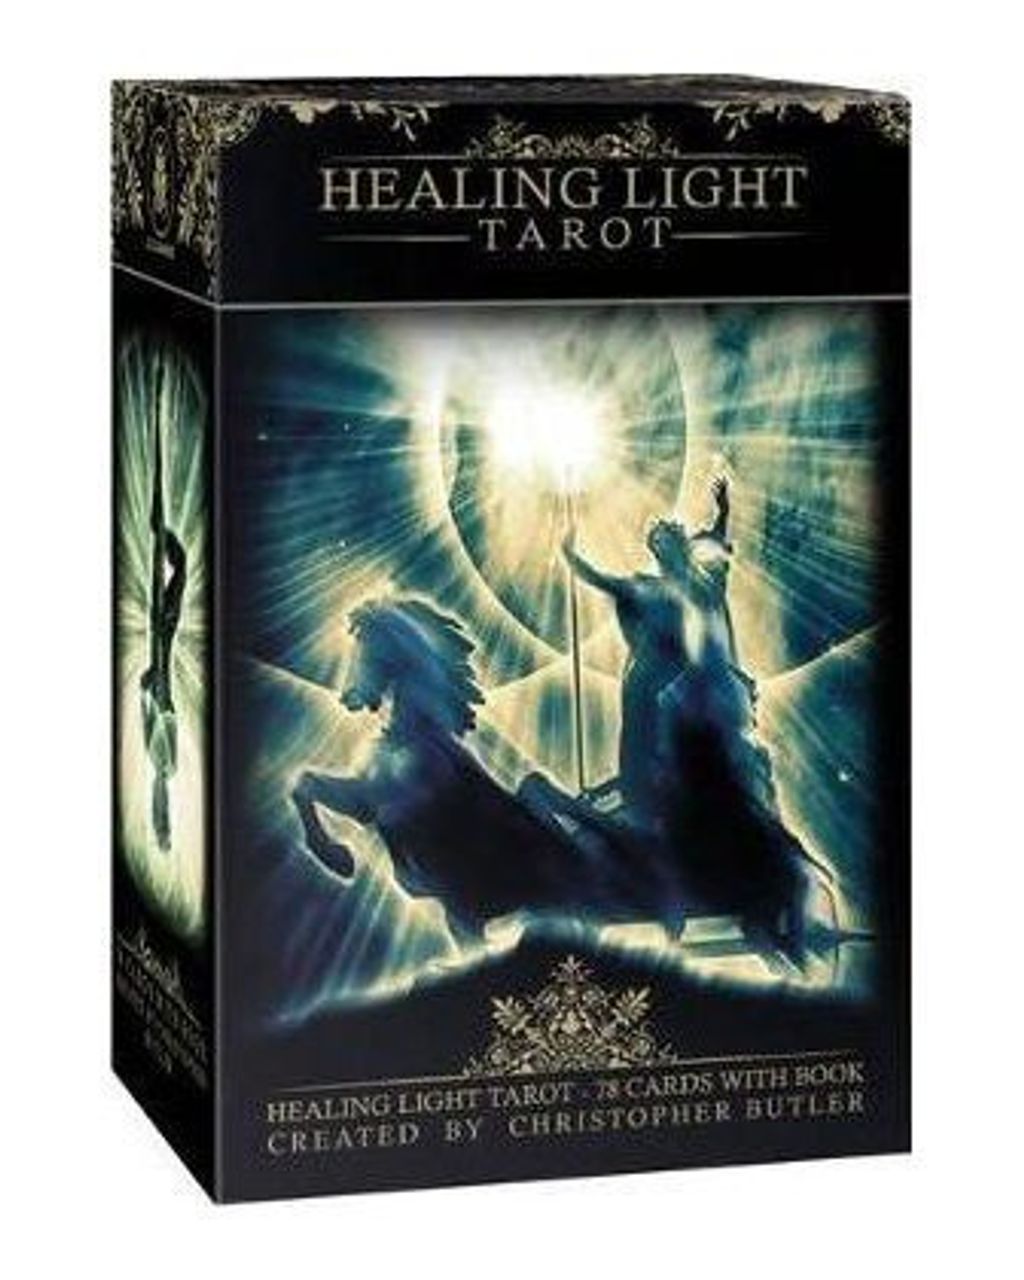 療癒之光塔羅：Healing Light Tarot.jpg